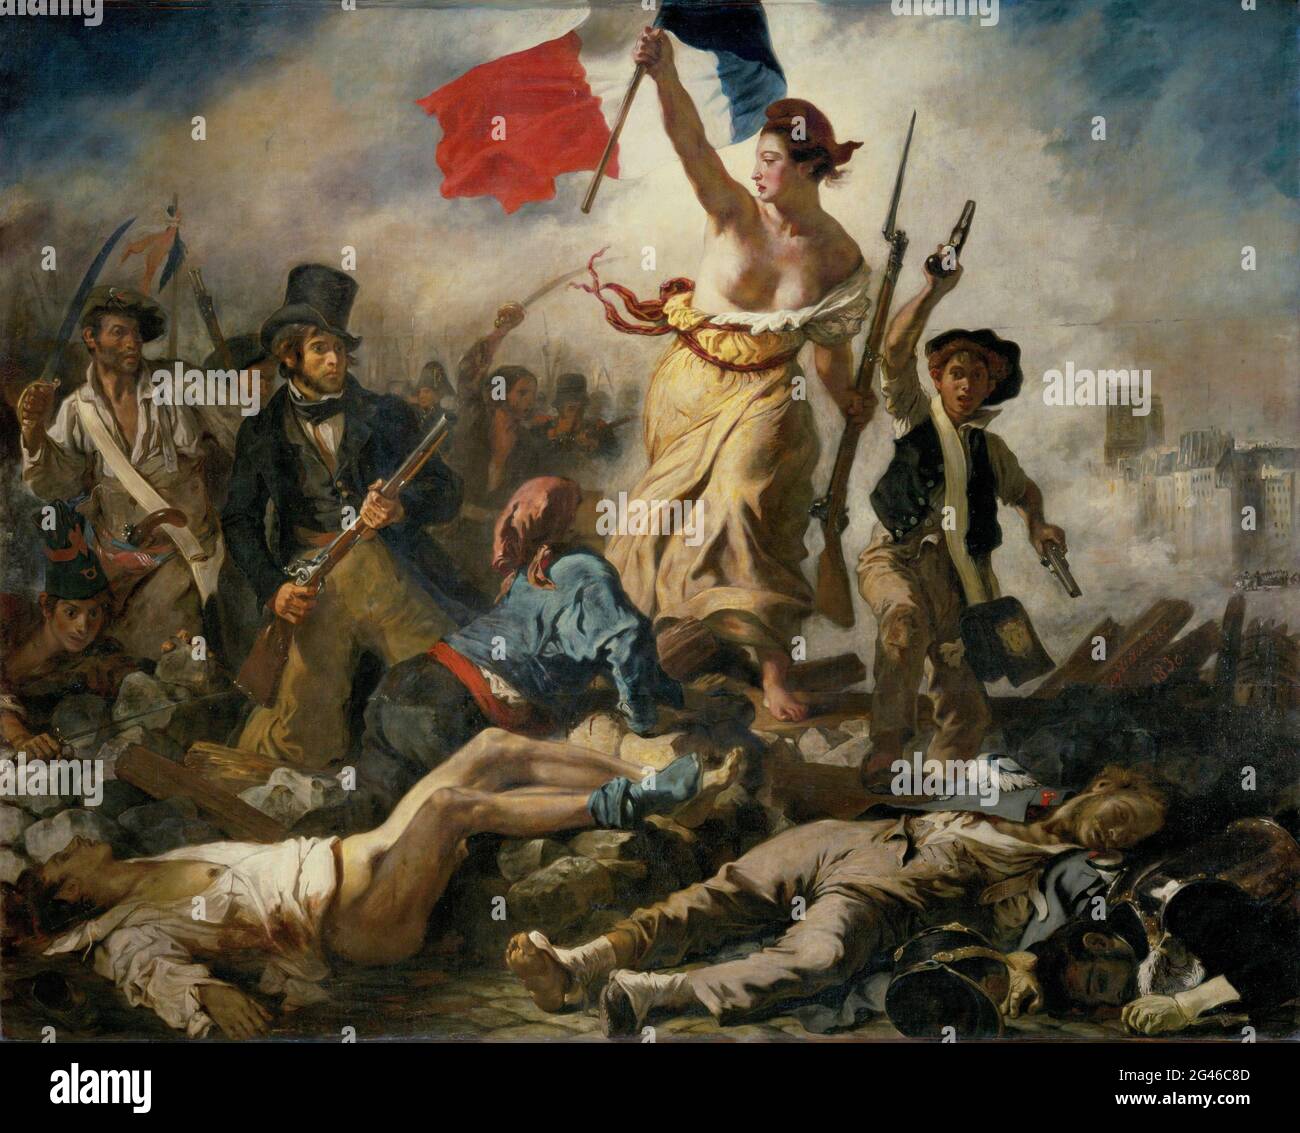 Titolo: Libertà alla guida del popolo Creatore: Eugène Delacroix. Data: c.1830-31 Medium: Olio su tela dimensioni: 260x325 cm Ubicazione: Louvre, Parigi, Francia Foto Stock